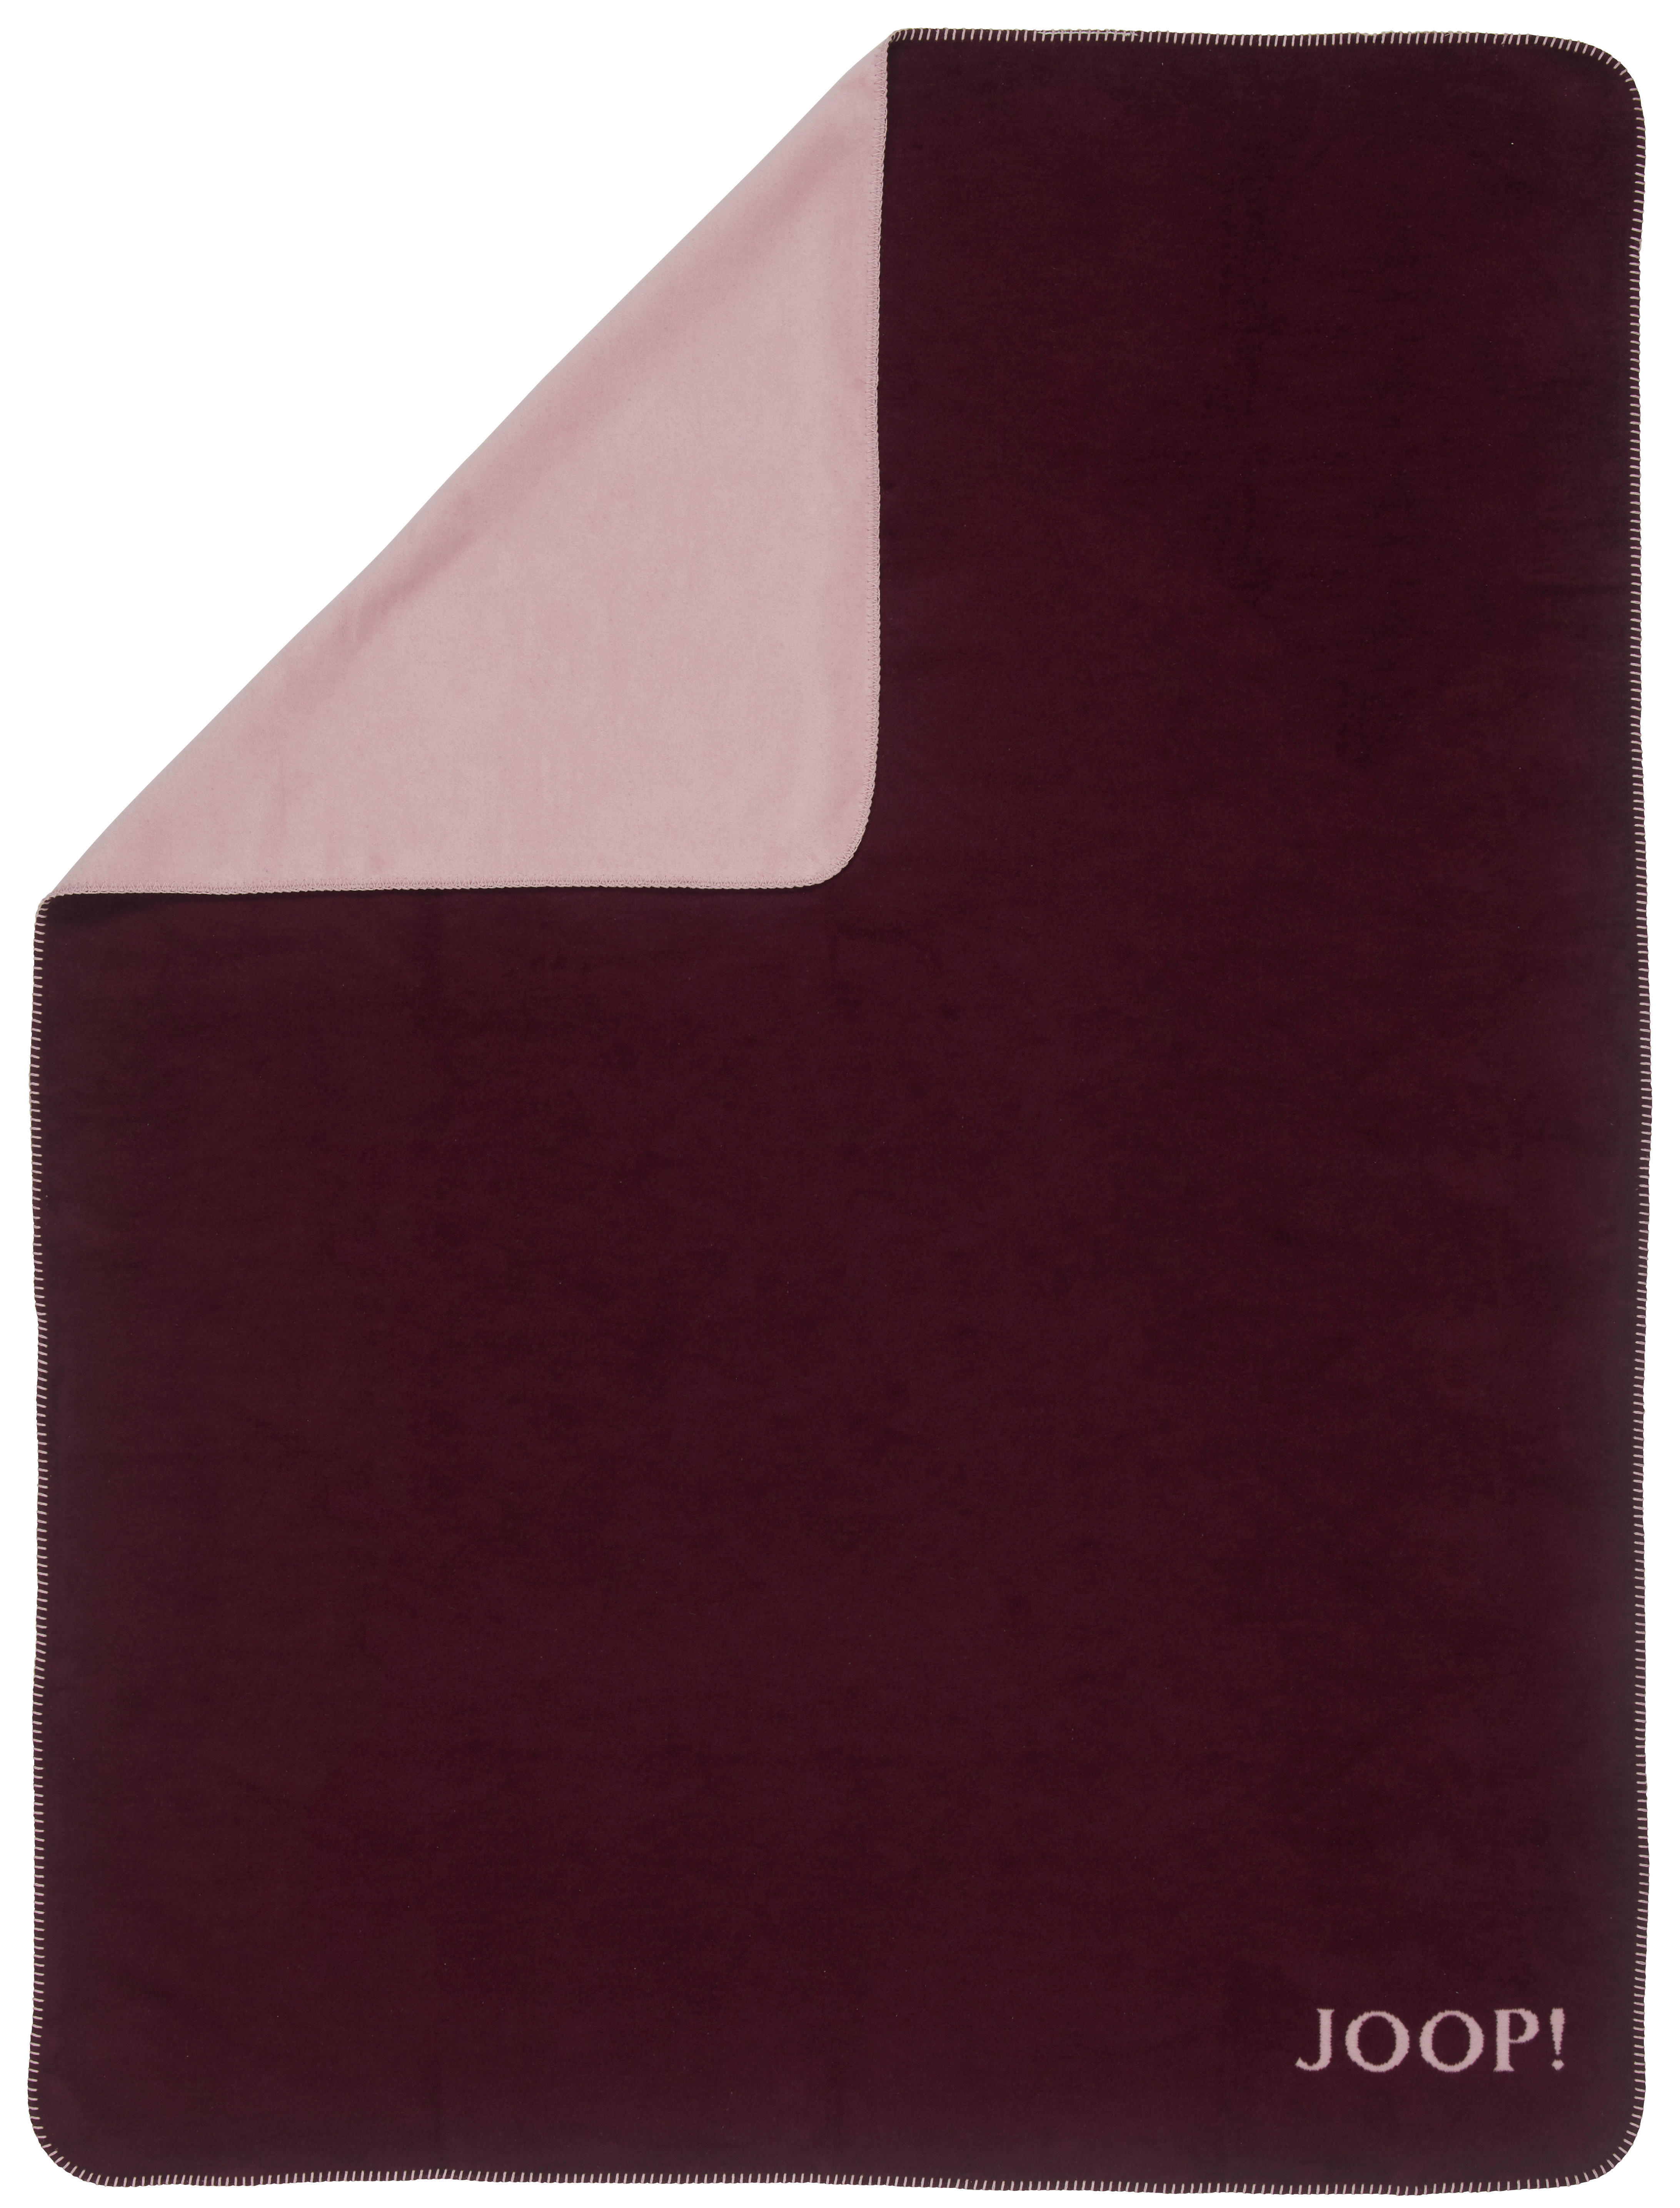 DECKE 150/200 cm  - Bordeaux/Rosa, Design, Textil (150/200cm) - Joop!